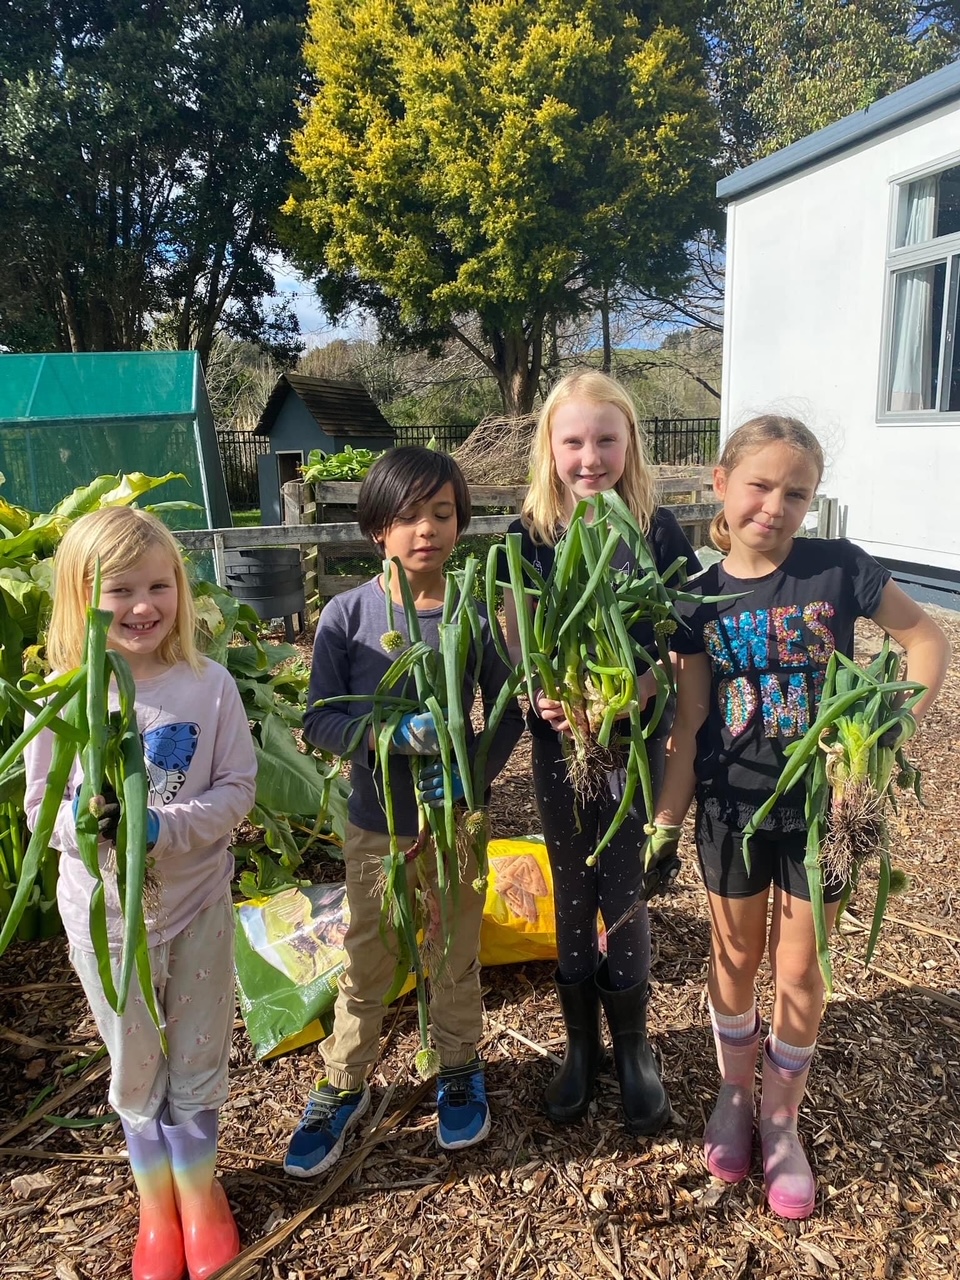 Children holding vegetables from the garden.